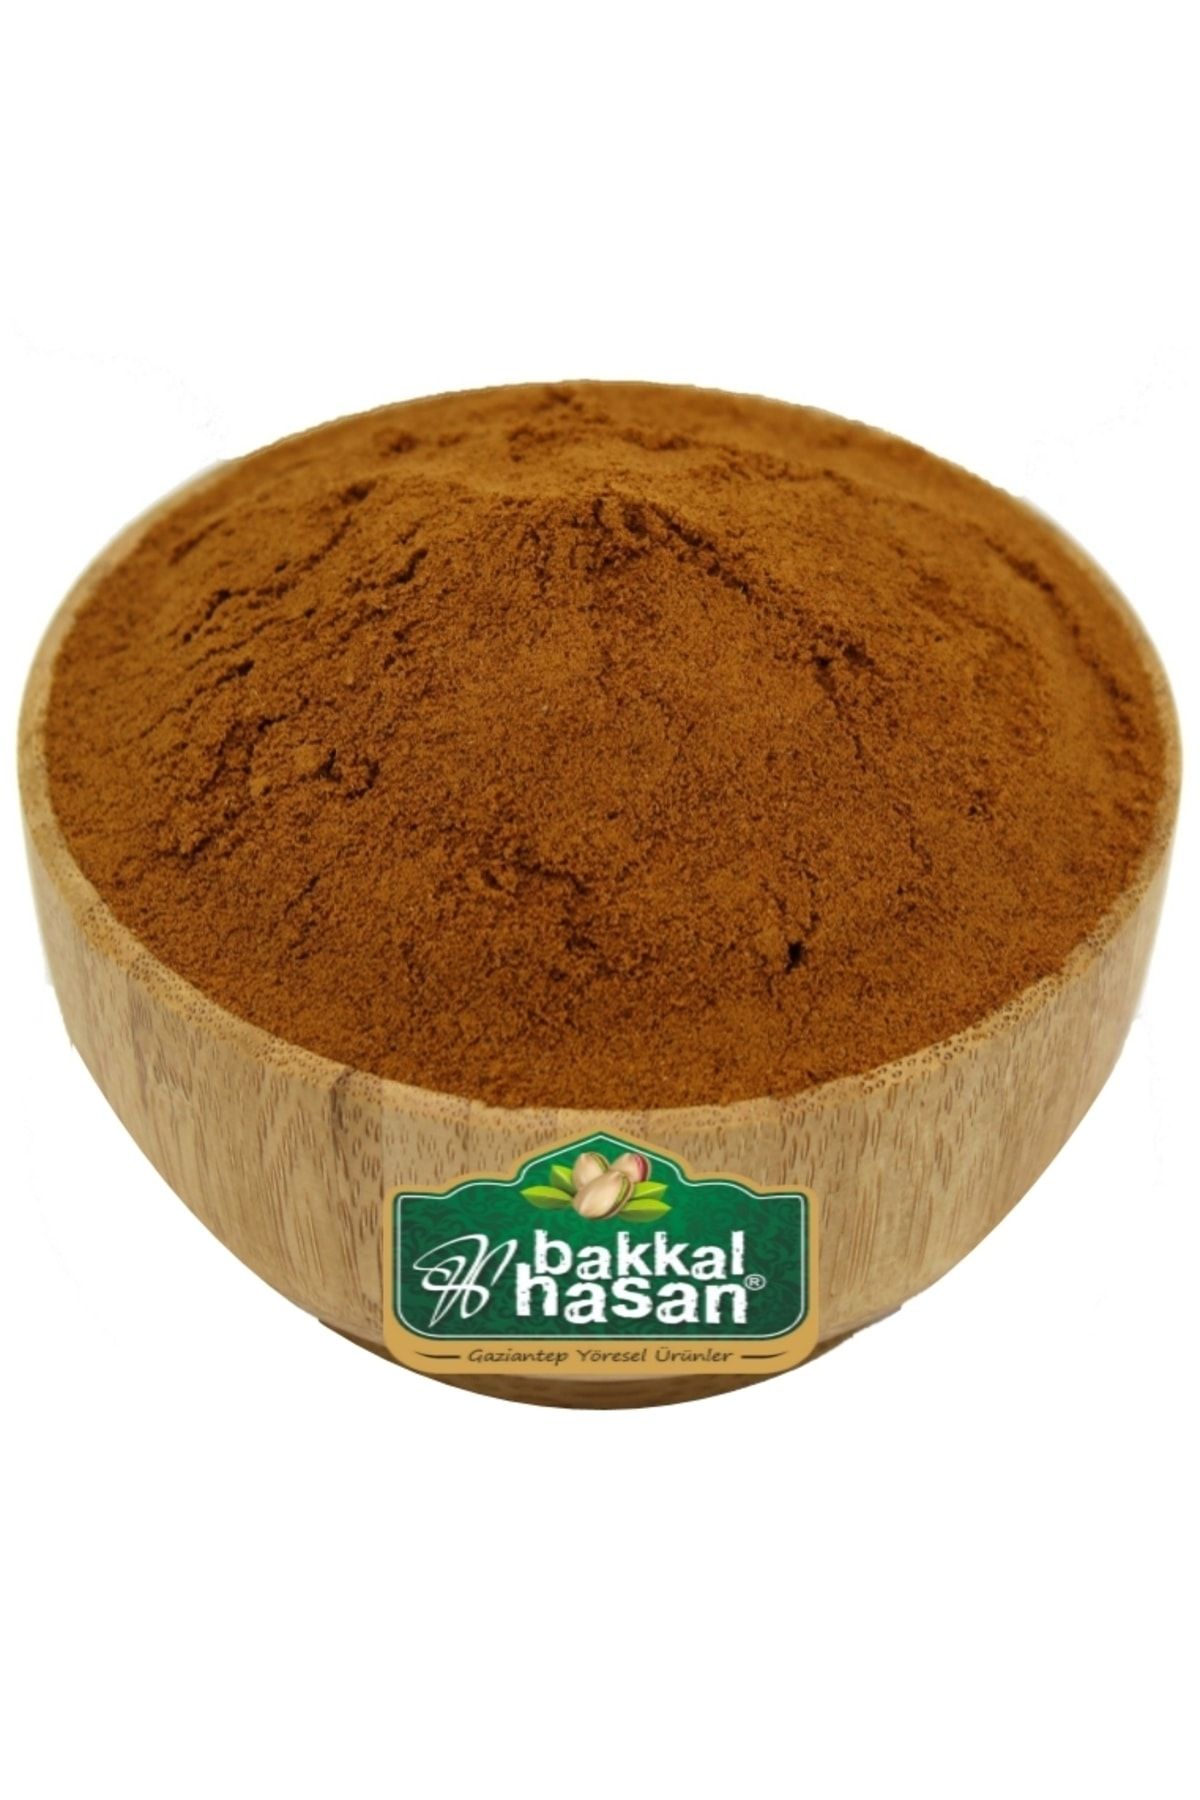 bakkal hasan Damla Sakızlı Toz Kahve 250 gr - Bakkal Hasan